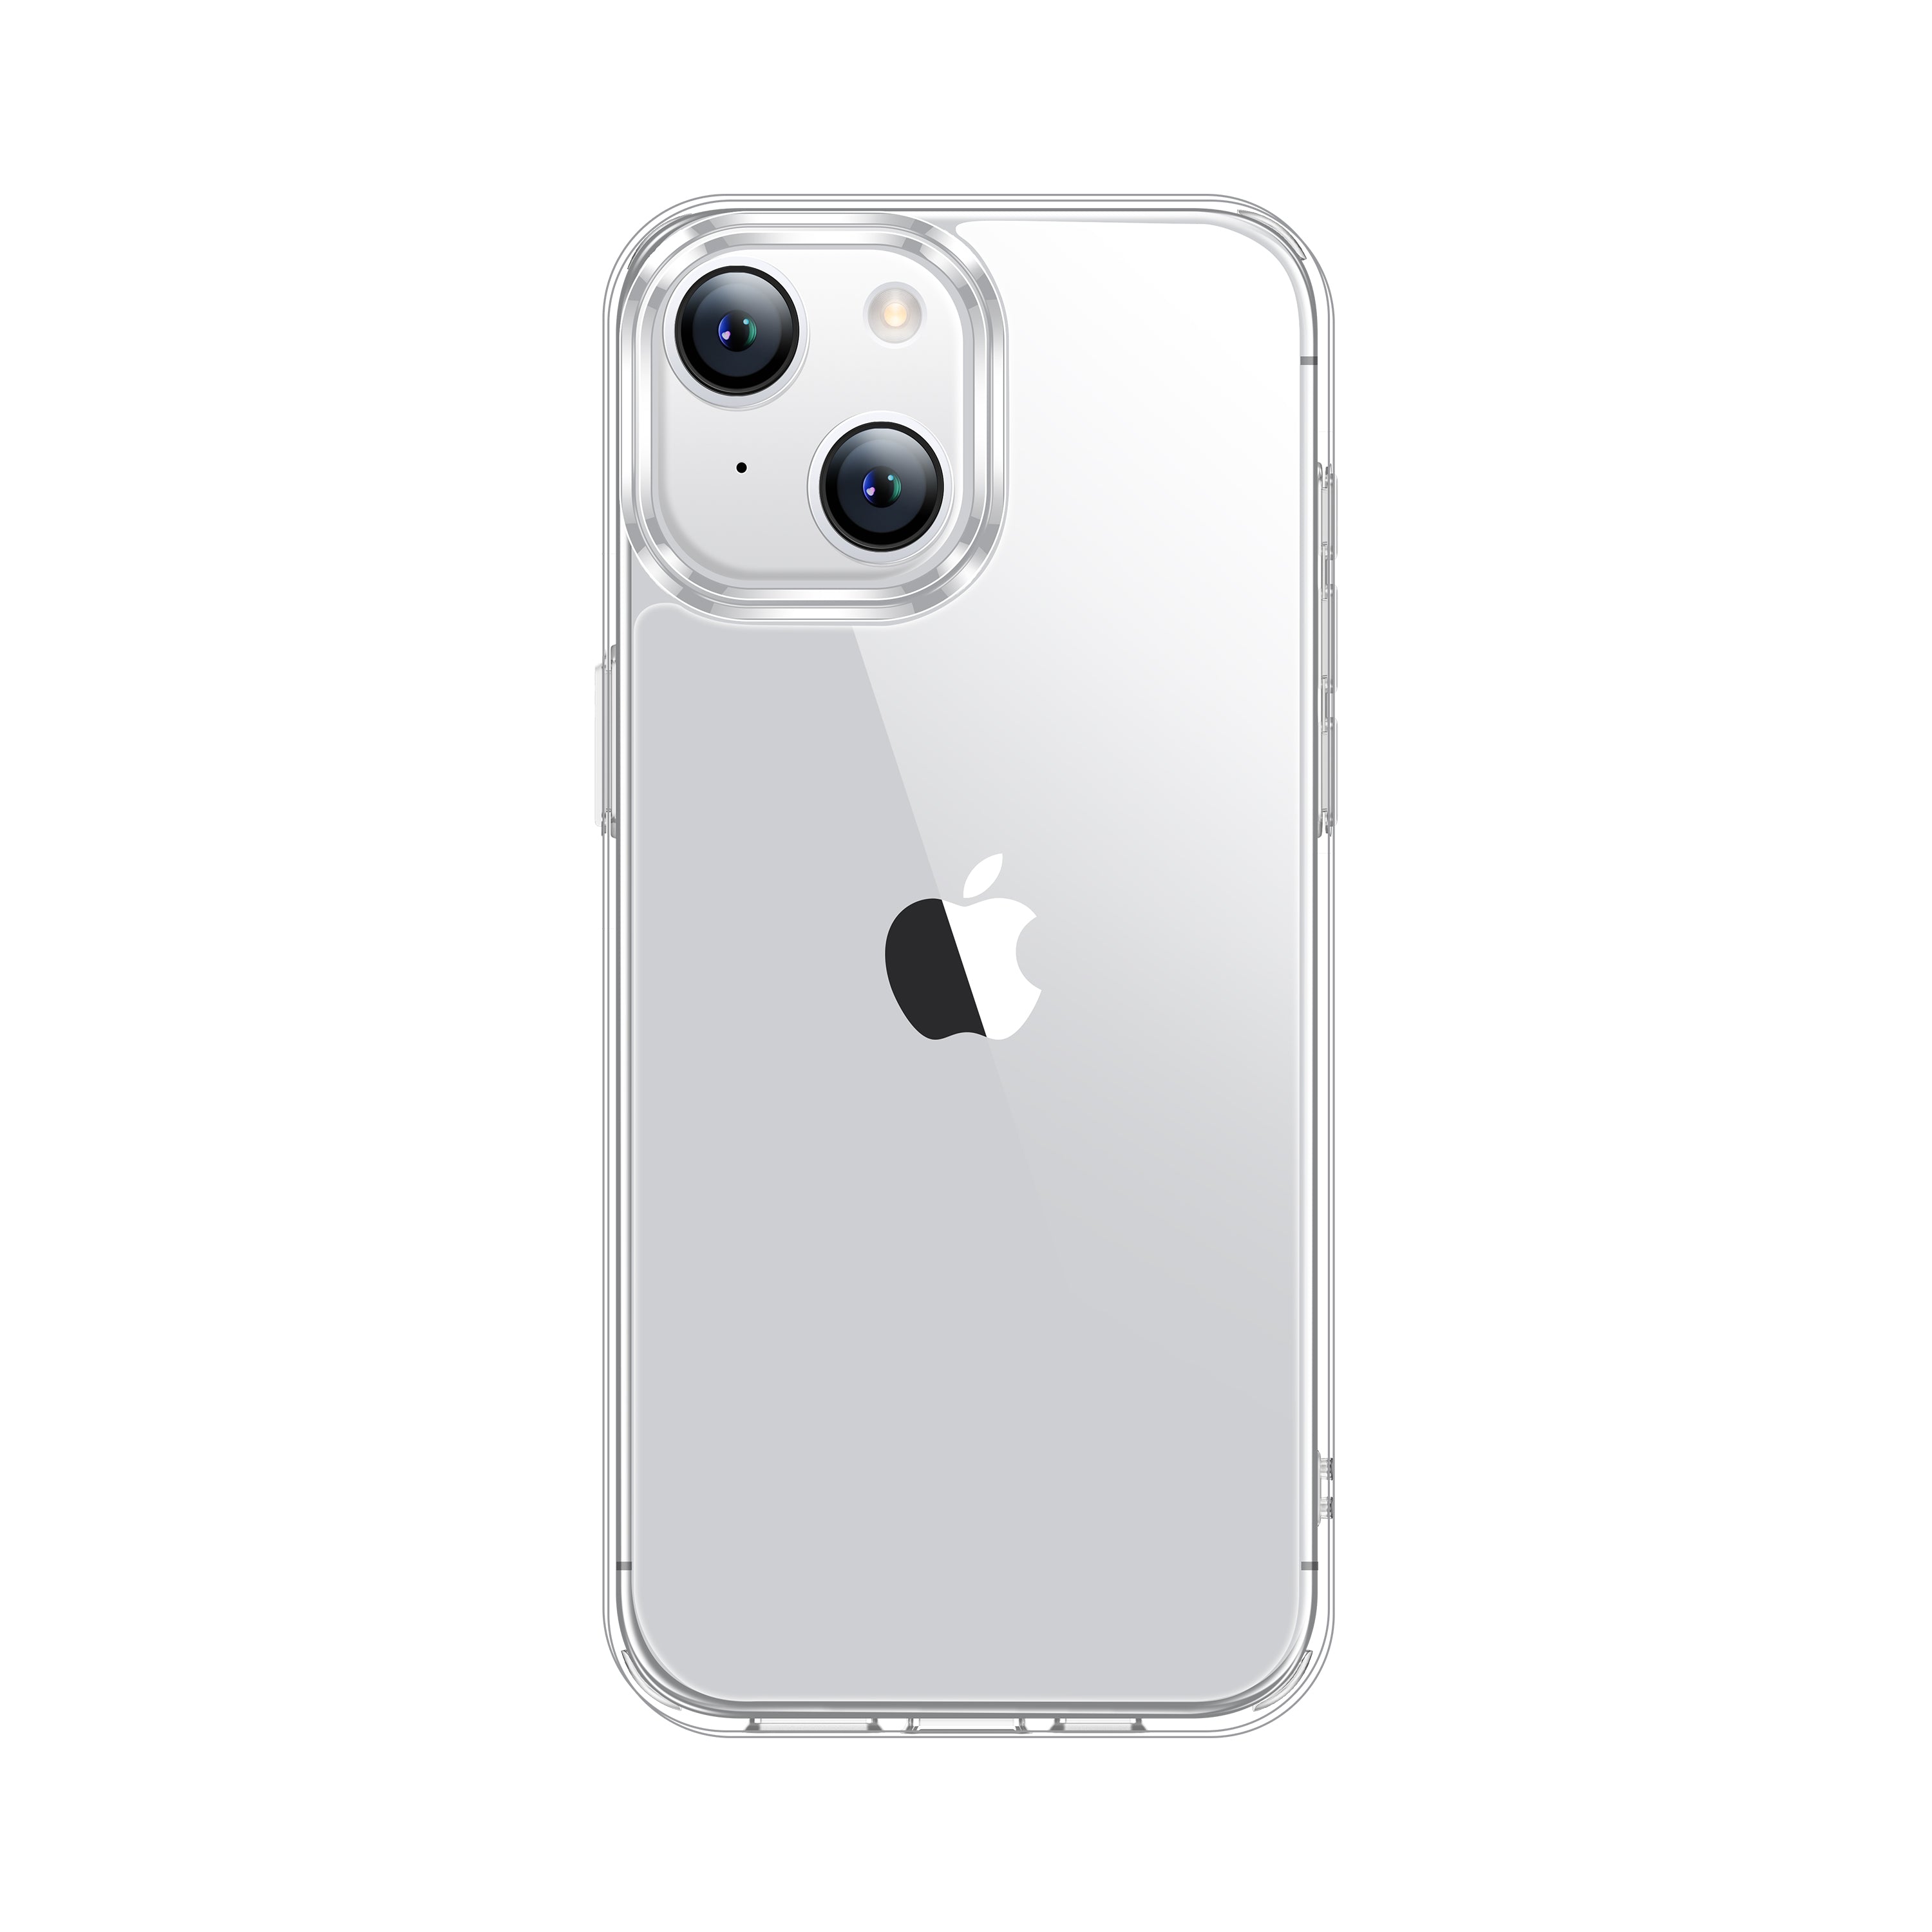  CASEKOO - Funda transparente ultra híbrida, cubierta  transparente con parte trasera dura suave para iPhone 11 Pro Max de 6.5  pulgadas, con tecnología TPU parachoques. : Celulares y Accesorios